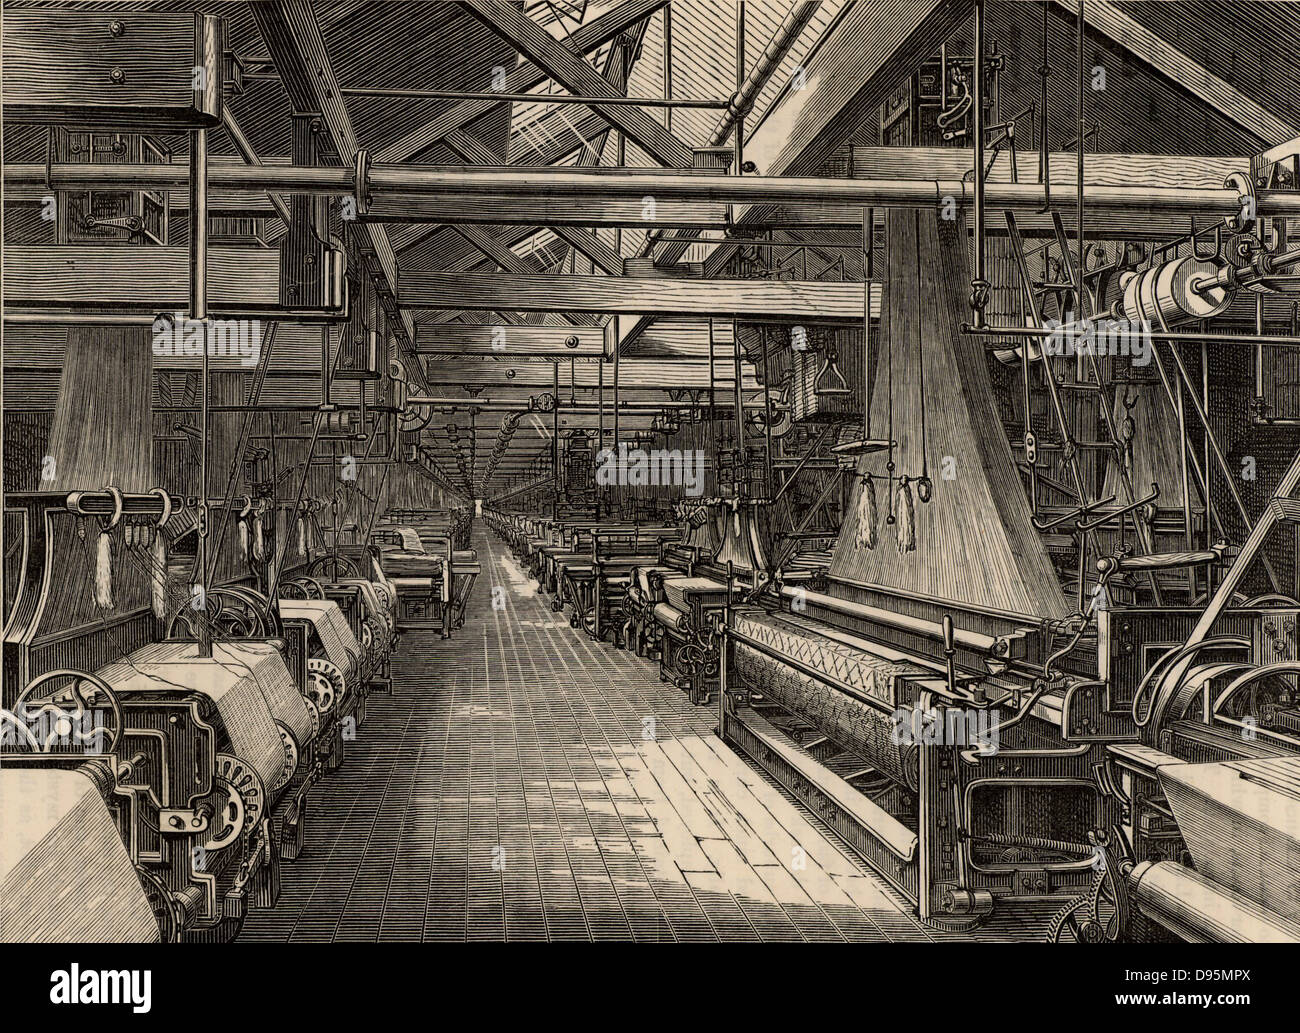 Weberei Schuppen, Erskine Beveridge&Firma St Leonard's Factory, Dunfermline, Schottland. Diese Schuppen sind fast 1.000 Jacquard Webmaschinen für das Weben von Leinen Damast. Den Riemen und die Antriebswelle Sendeleistung an die Webstühle aus einem fernen Dampfmaschine ist deutlich sichtbar. Von "großen Industrien von Großbritannien" (London, 1880). Gravur. Stockfoto